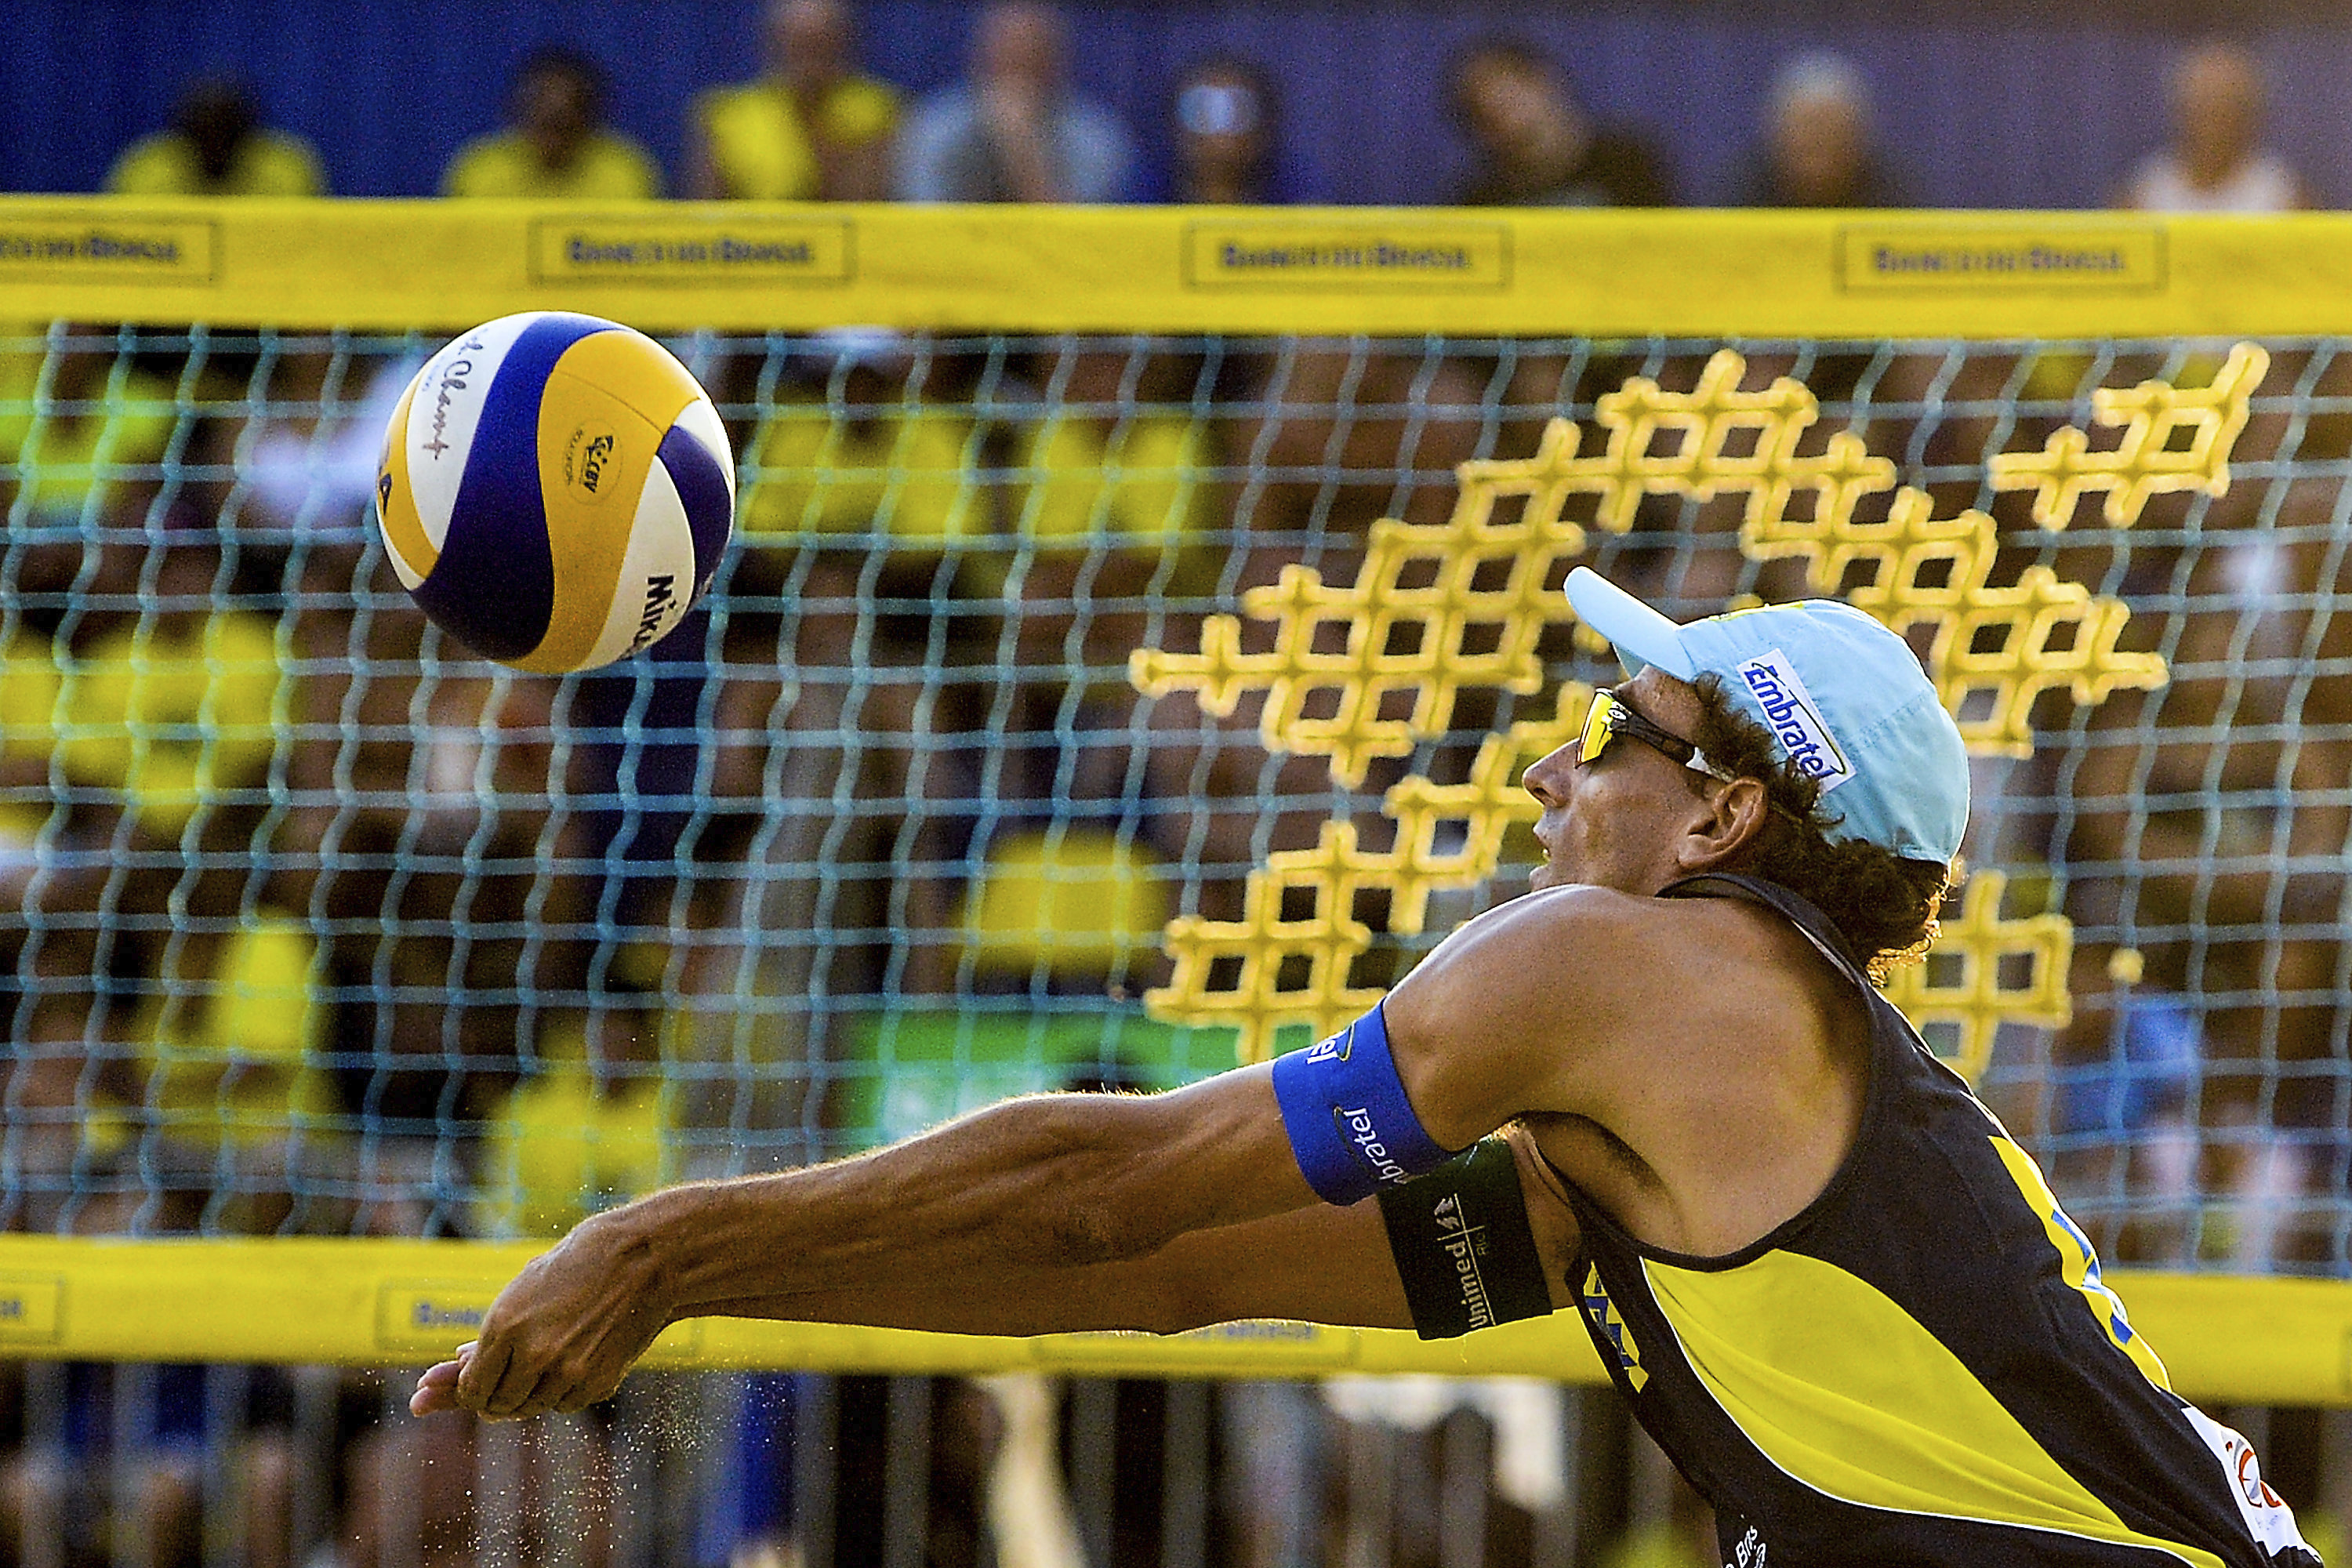 Vôlei de Praia - Confederação Brasileira de Voleibol